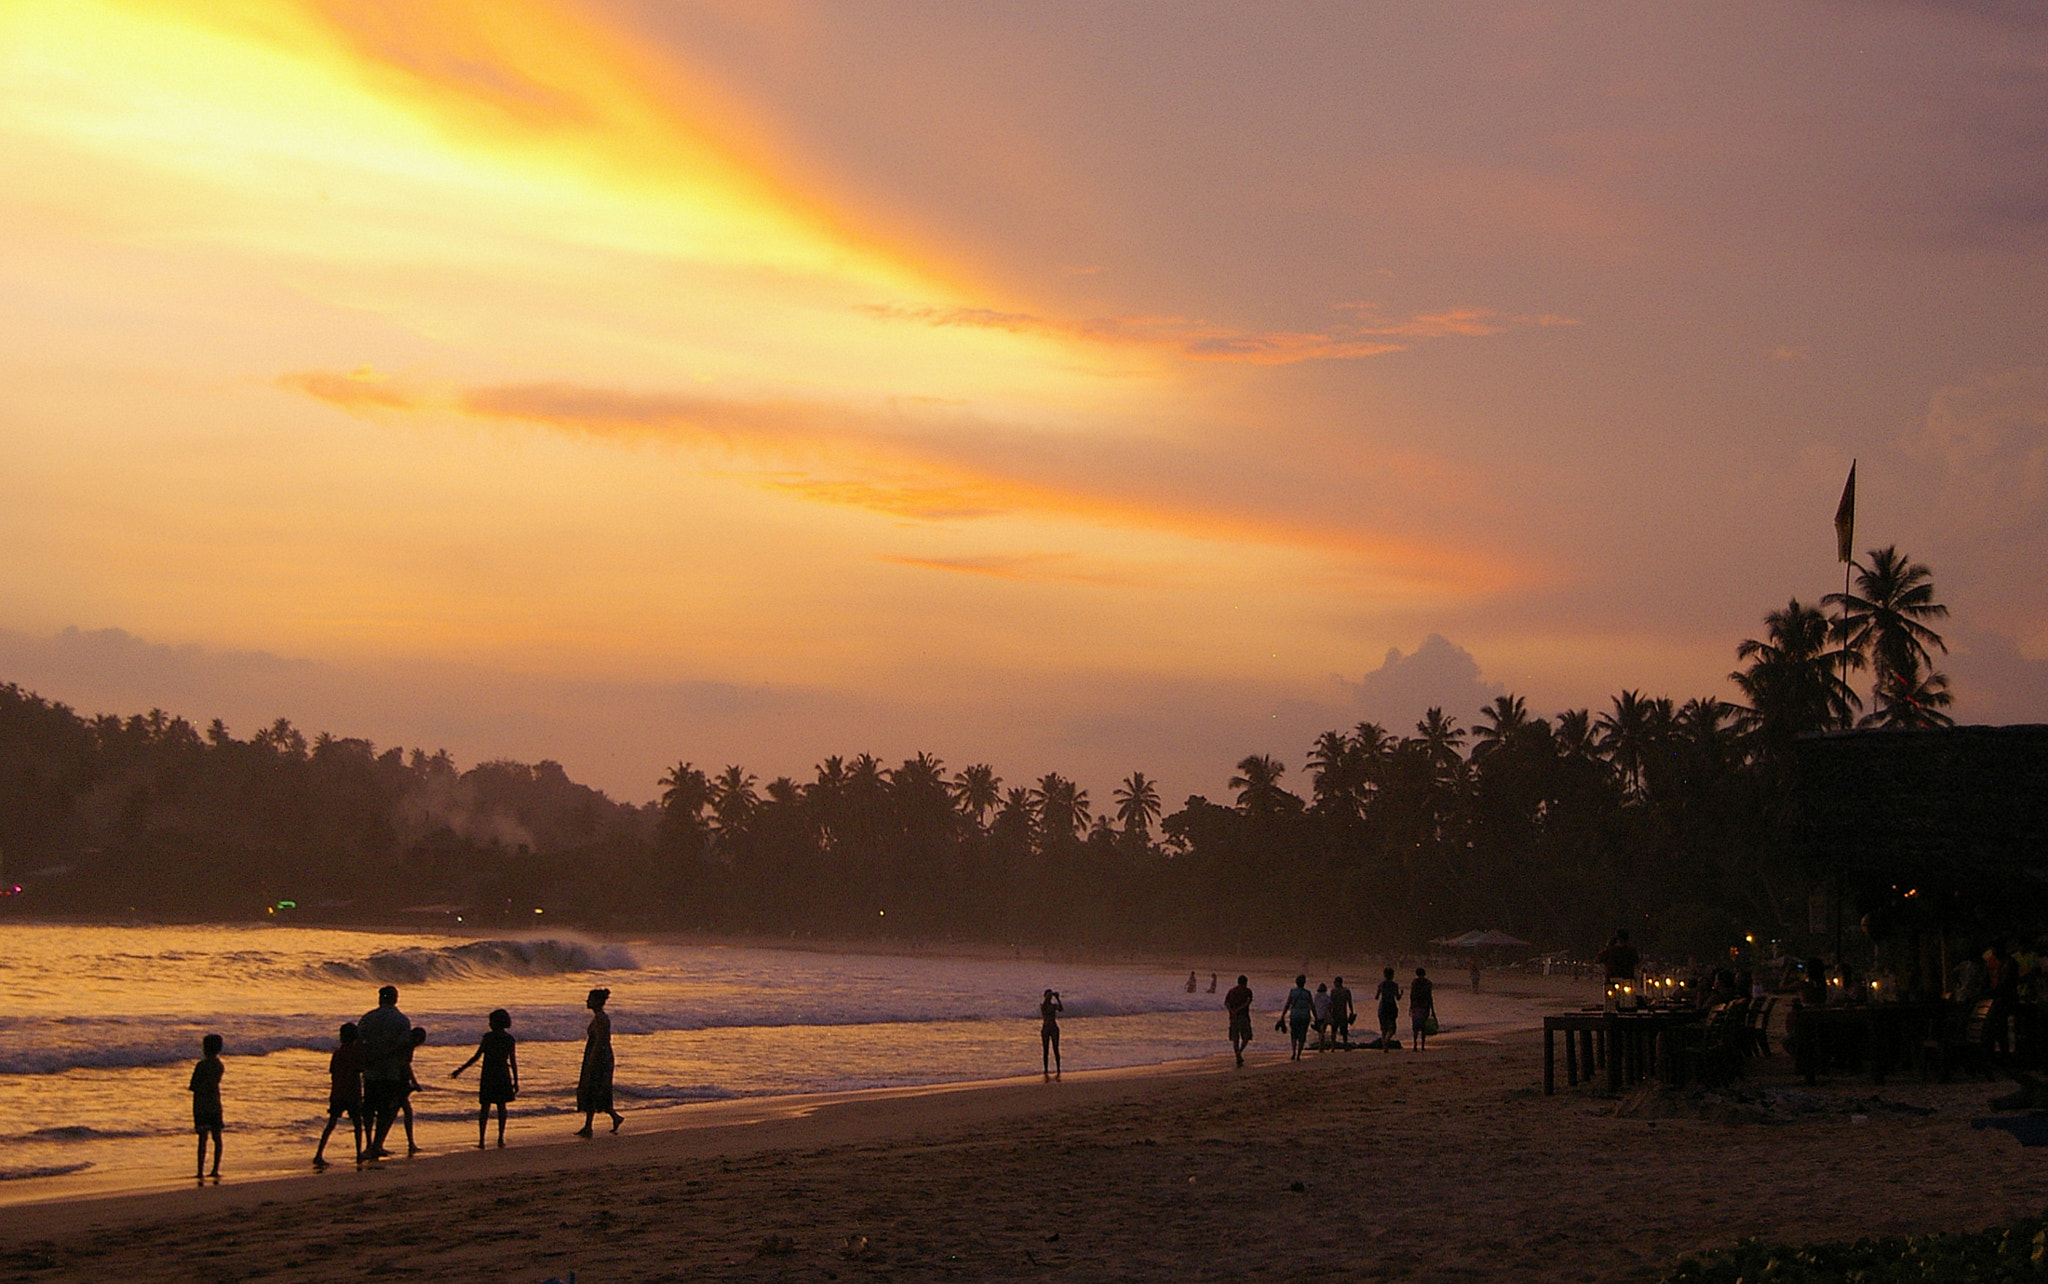 Pentax *ist DS sample photo. Sunset over mirissa beach, sri lanka photography